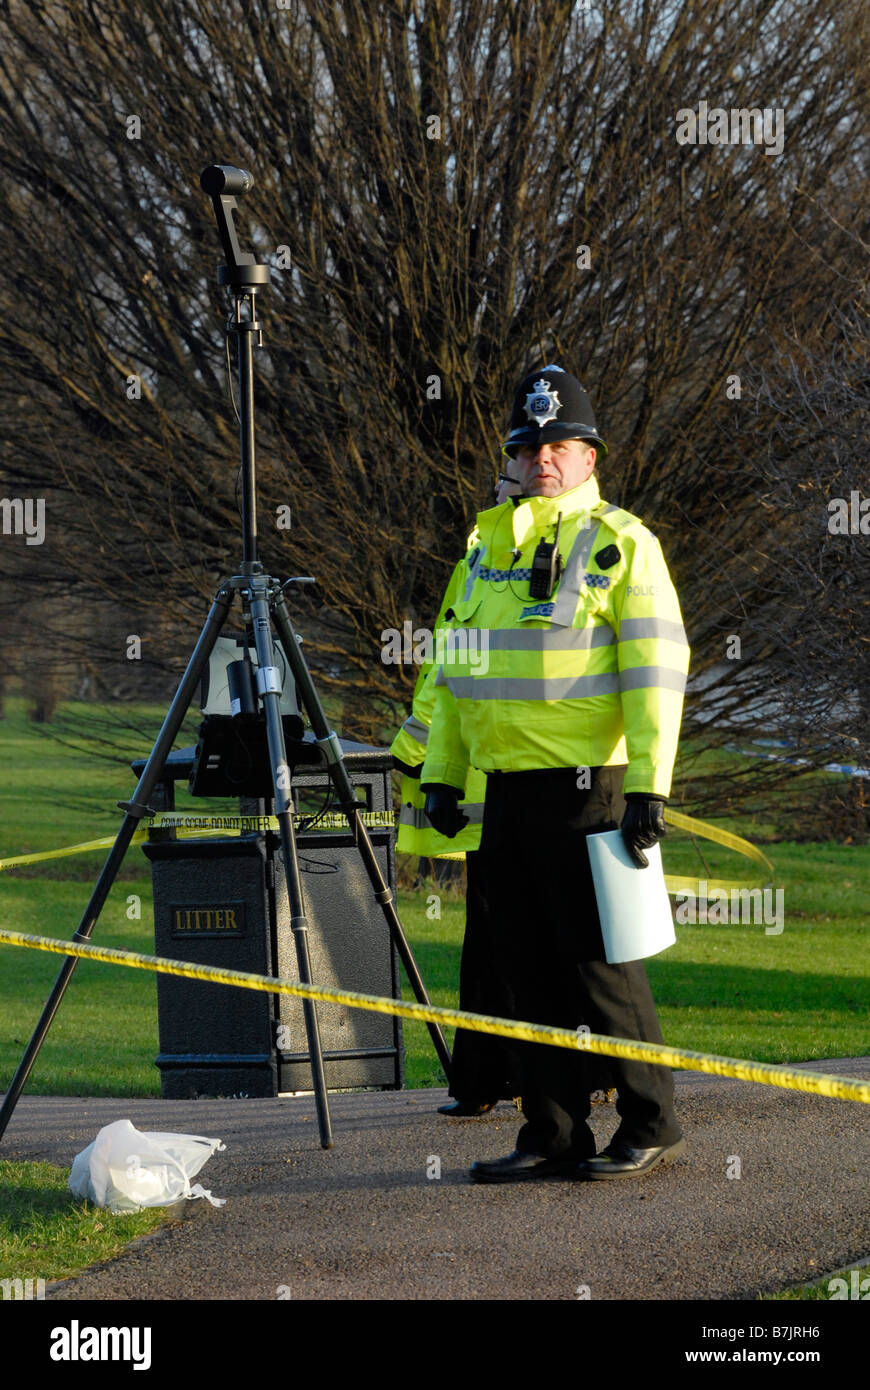 SOCO Police maps une scène de crime avec un appareil photo à 360 degrés Banque D'Images